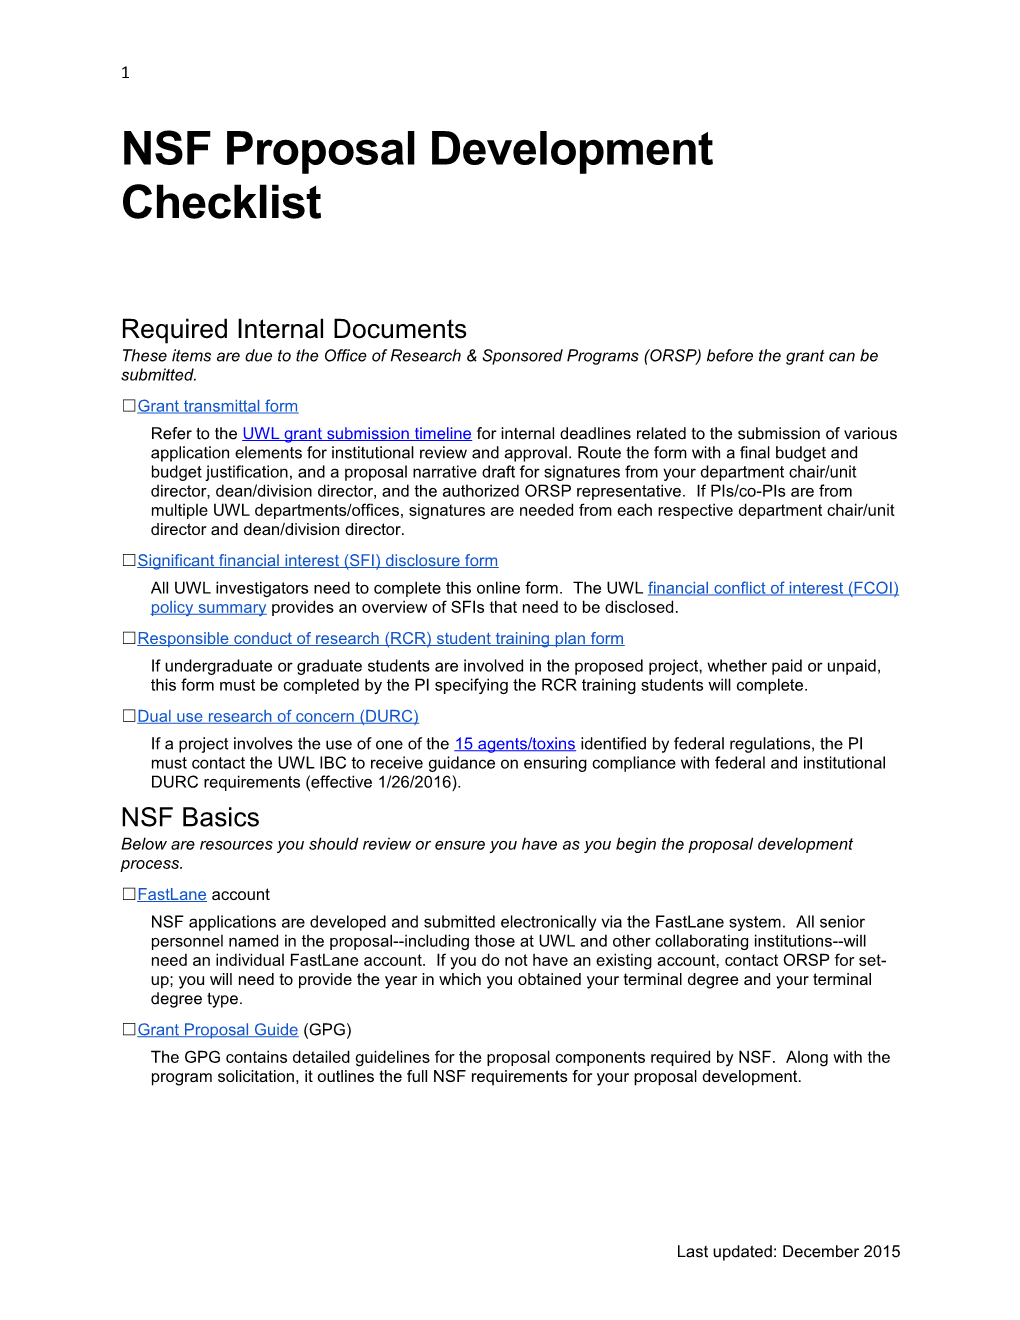 NSF Proposal Development Checklist